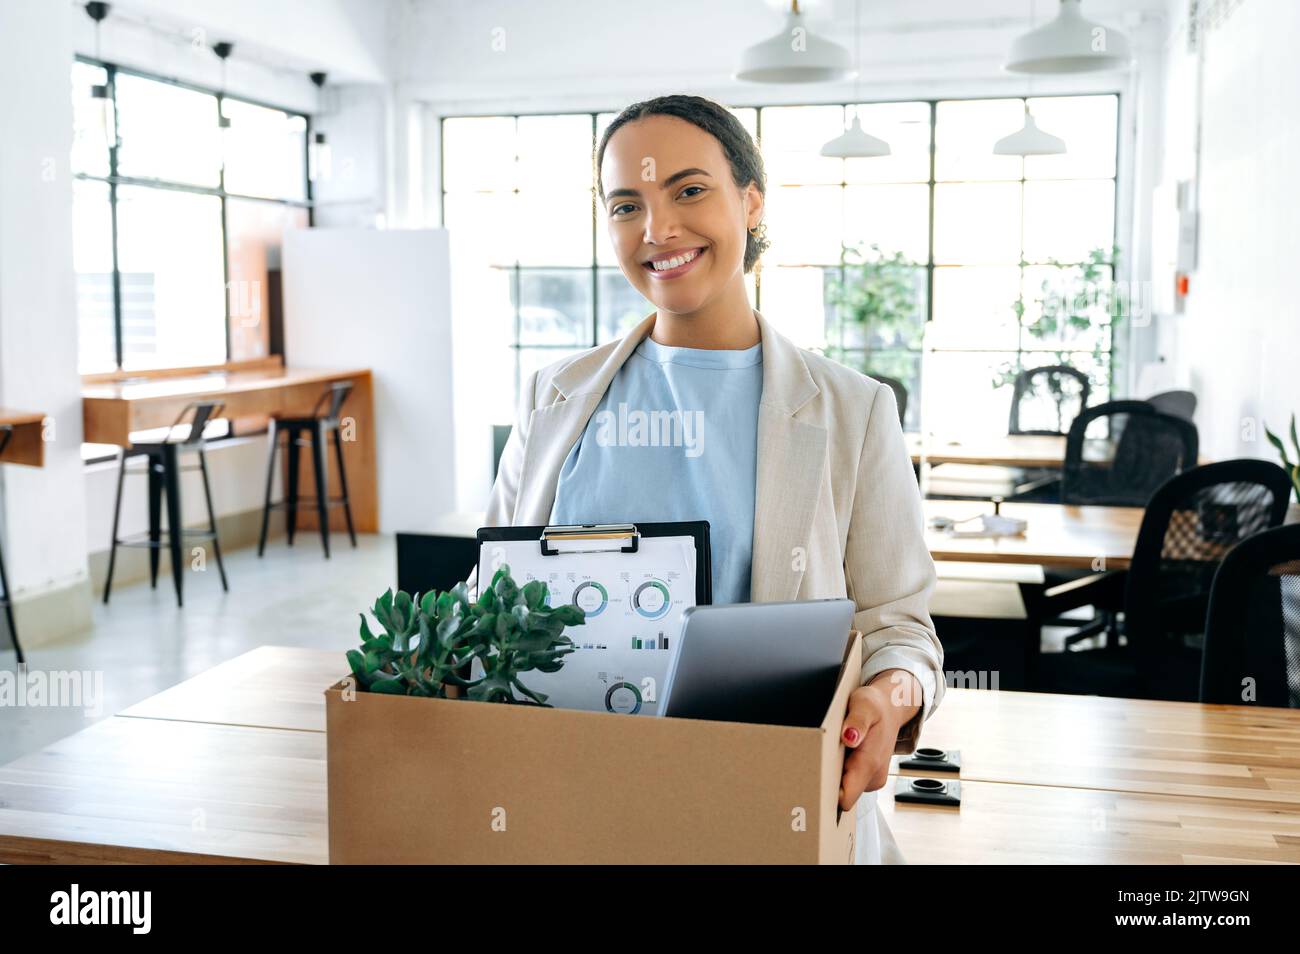 Glückliche junge brasilianische oder hispanische Mitarbeiterin, die einen Karton in der Hand hält, im modernen Büro steht und lächelnd auf die Kamera schaut, bekam einen neuen Job, ihren ersten Arbeitstag in einem neuen Arbeitsplatz Stockfoto